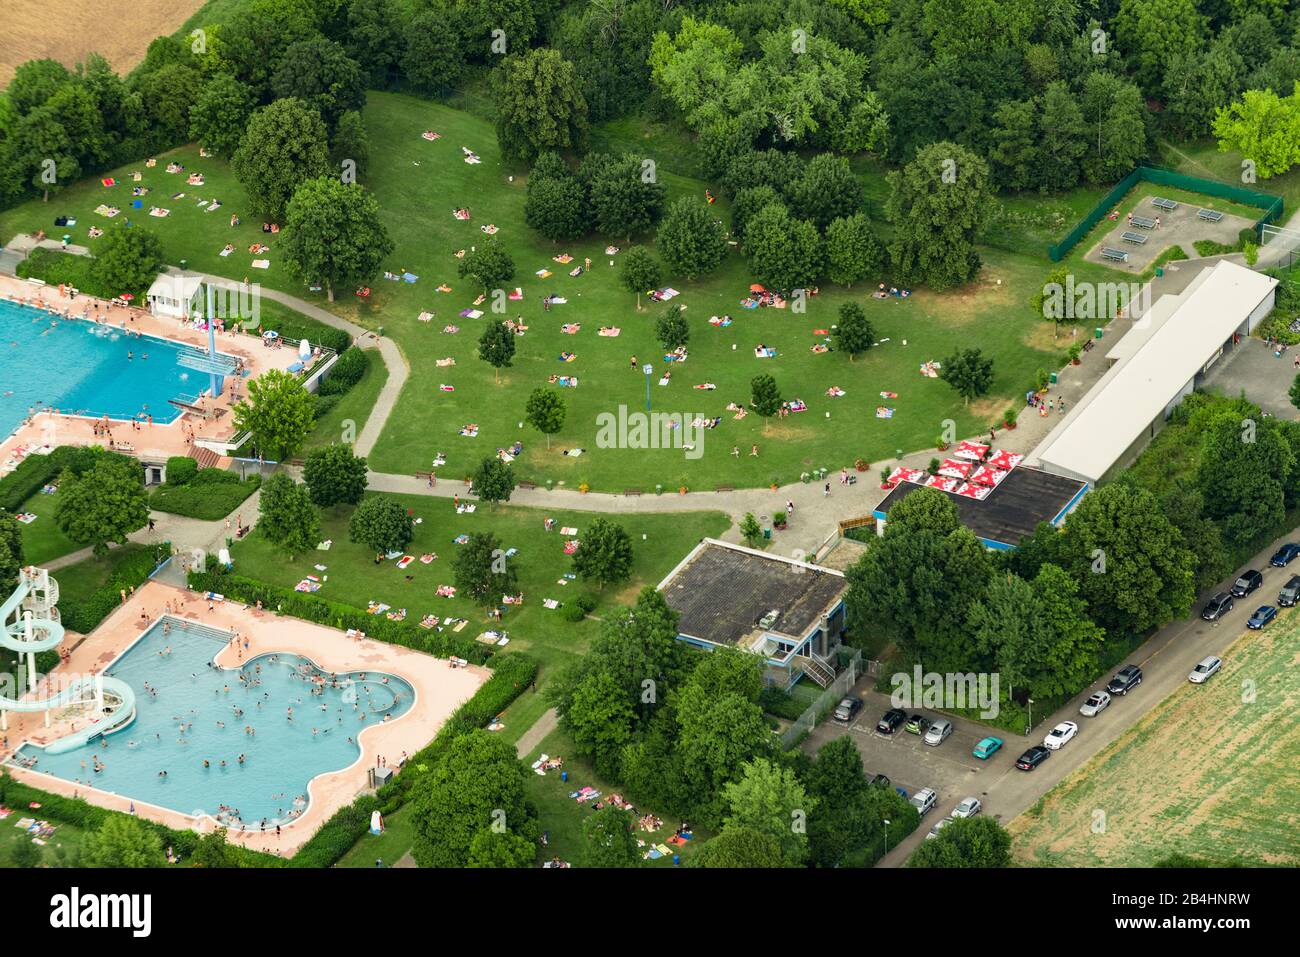 Luftaufnahme vom Freibad Asperg bei Ludwigsburg, Schwimmbecken und Liegewiese Stock Photo